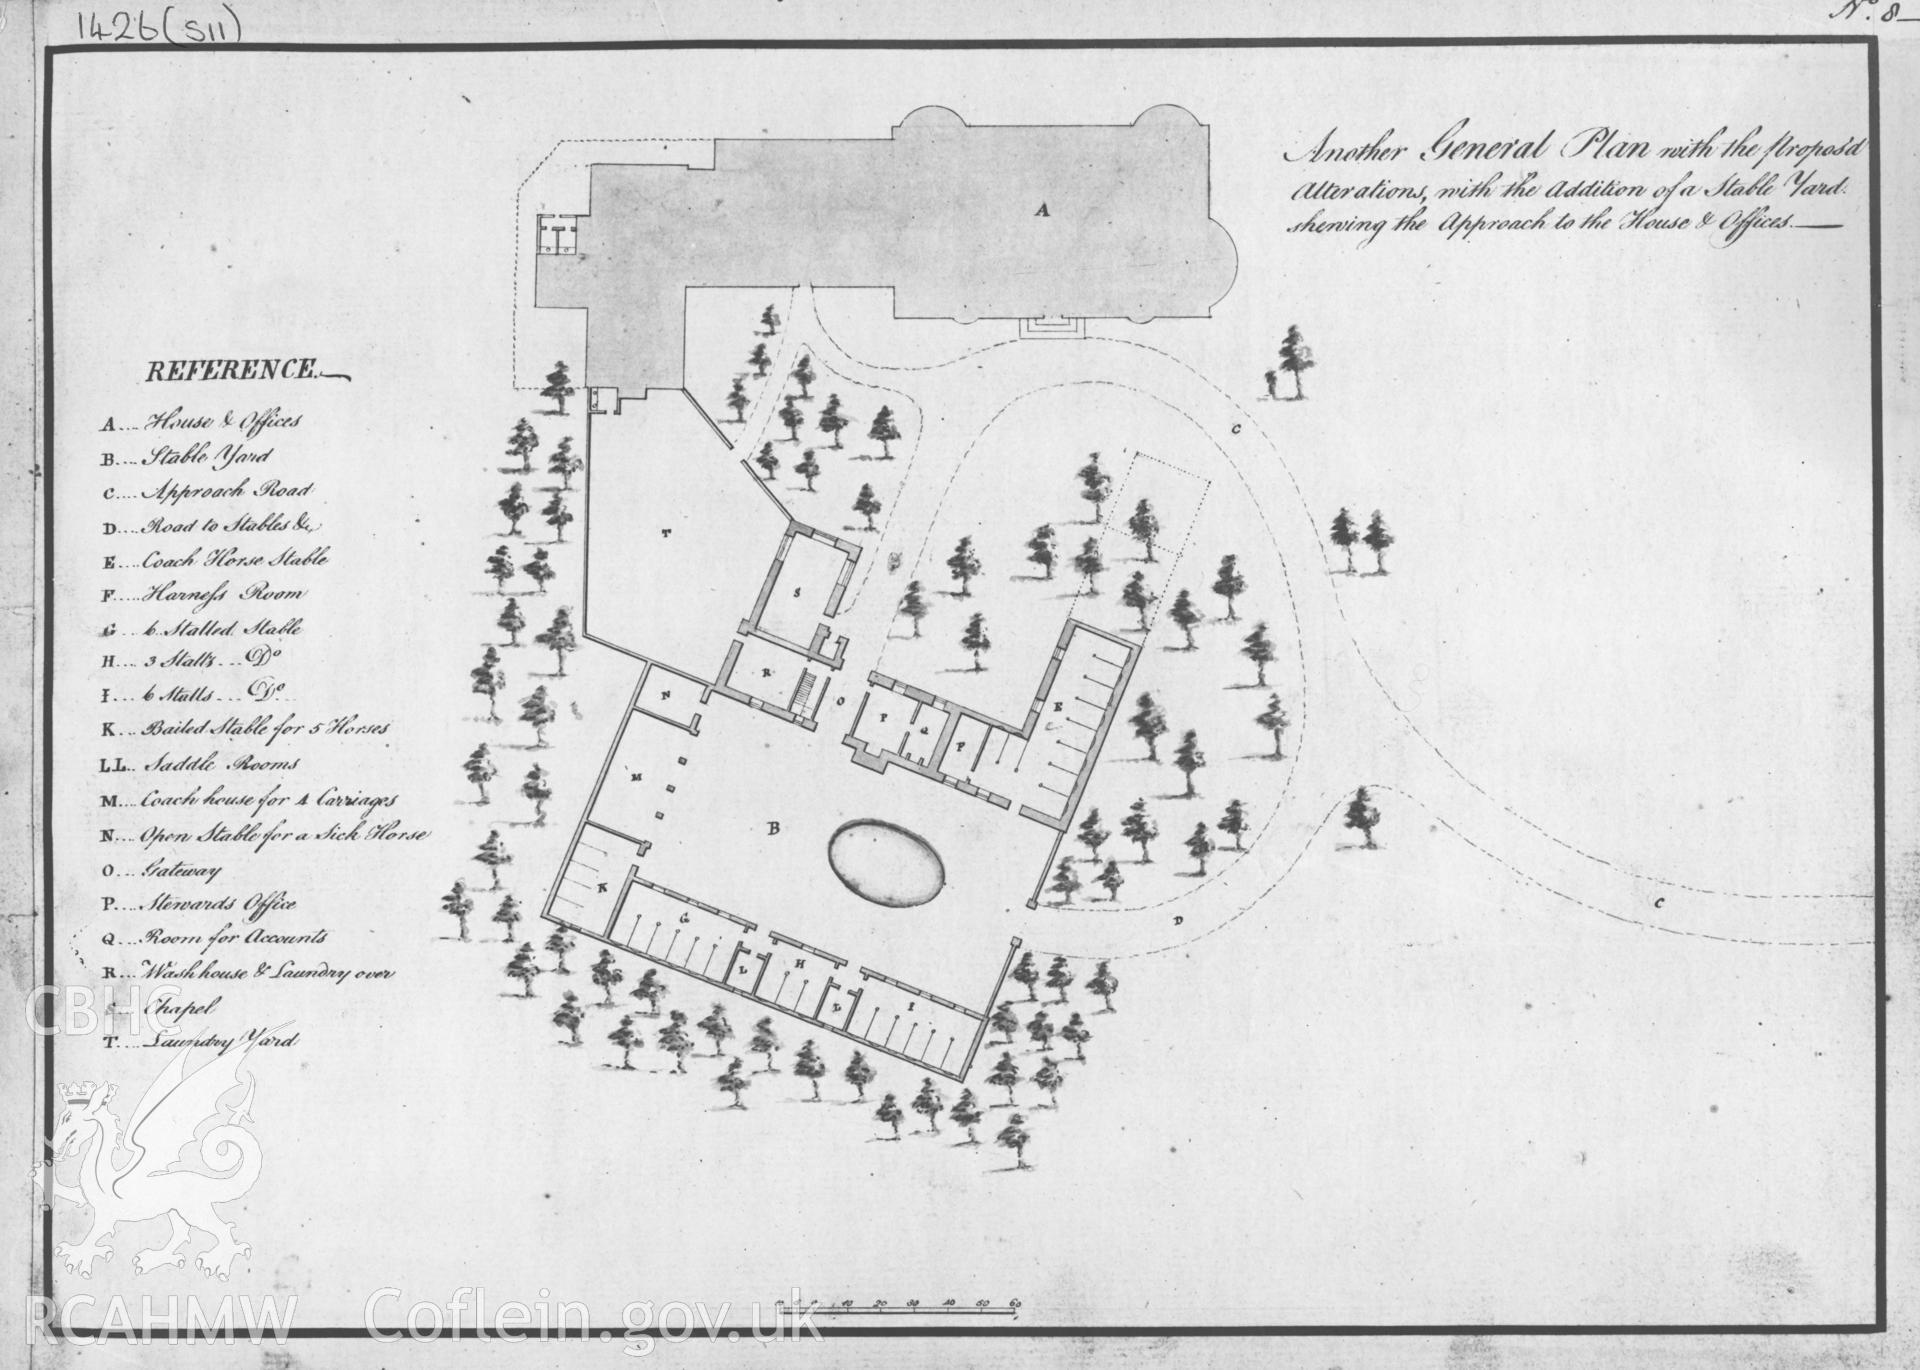 Digital copy of a 1762 drawing by Samuel Wyatt general plan of Penrhyn Castle.